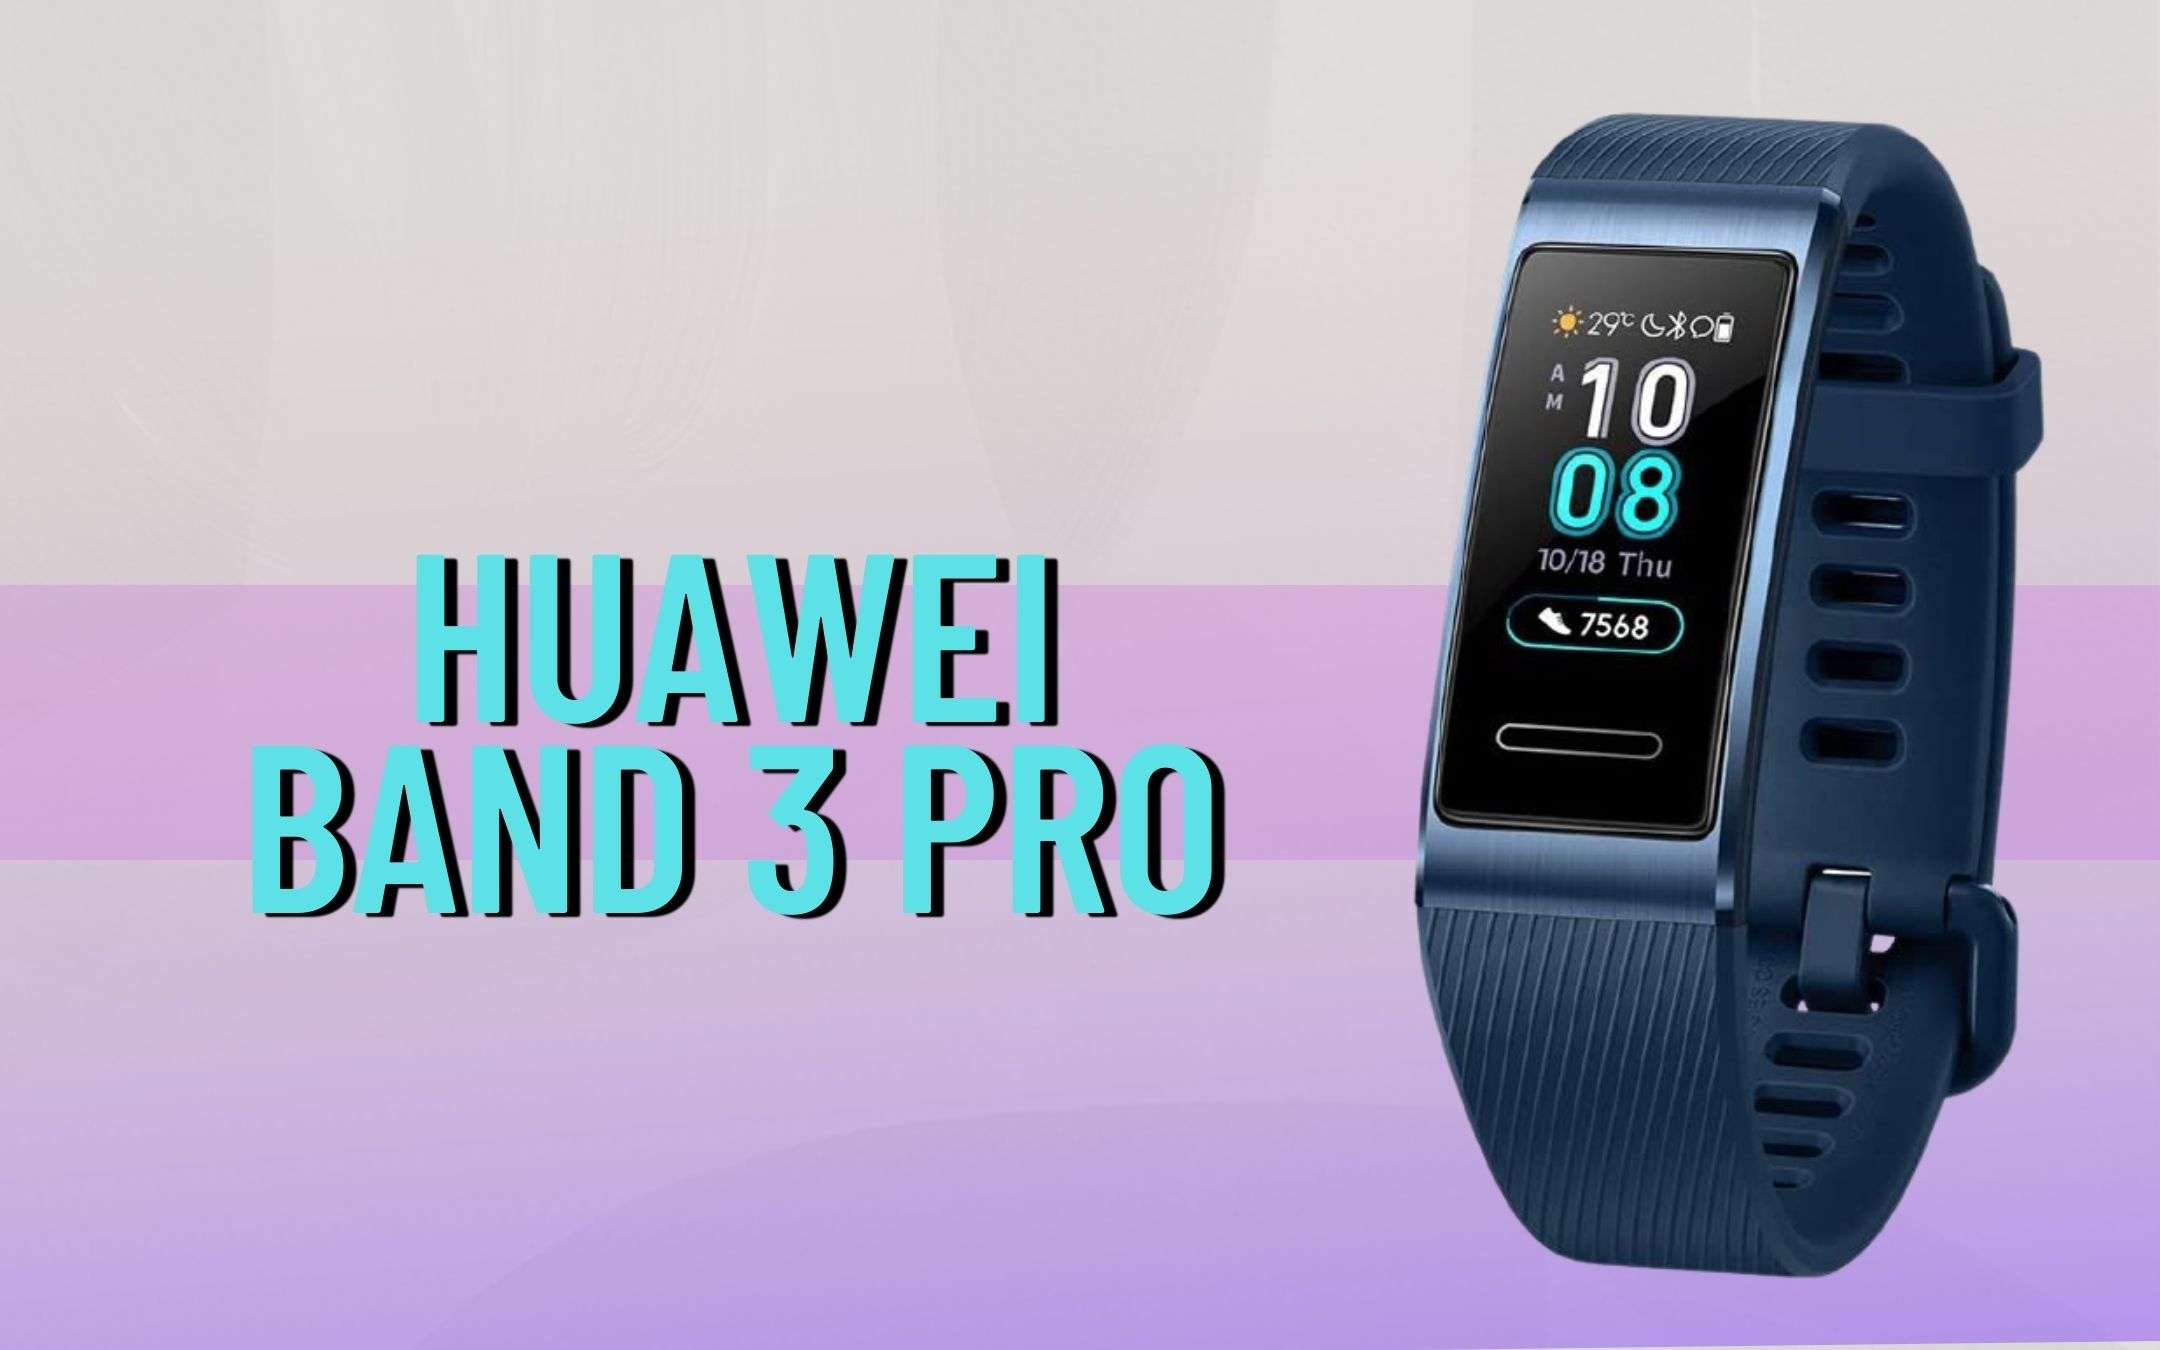 Huawei Band 3 Pro Gold. Huawei band 3 pro